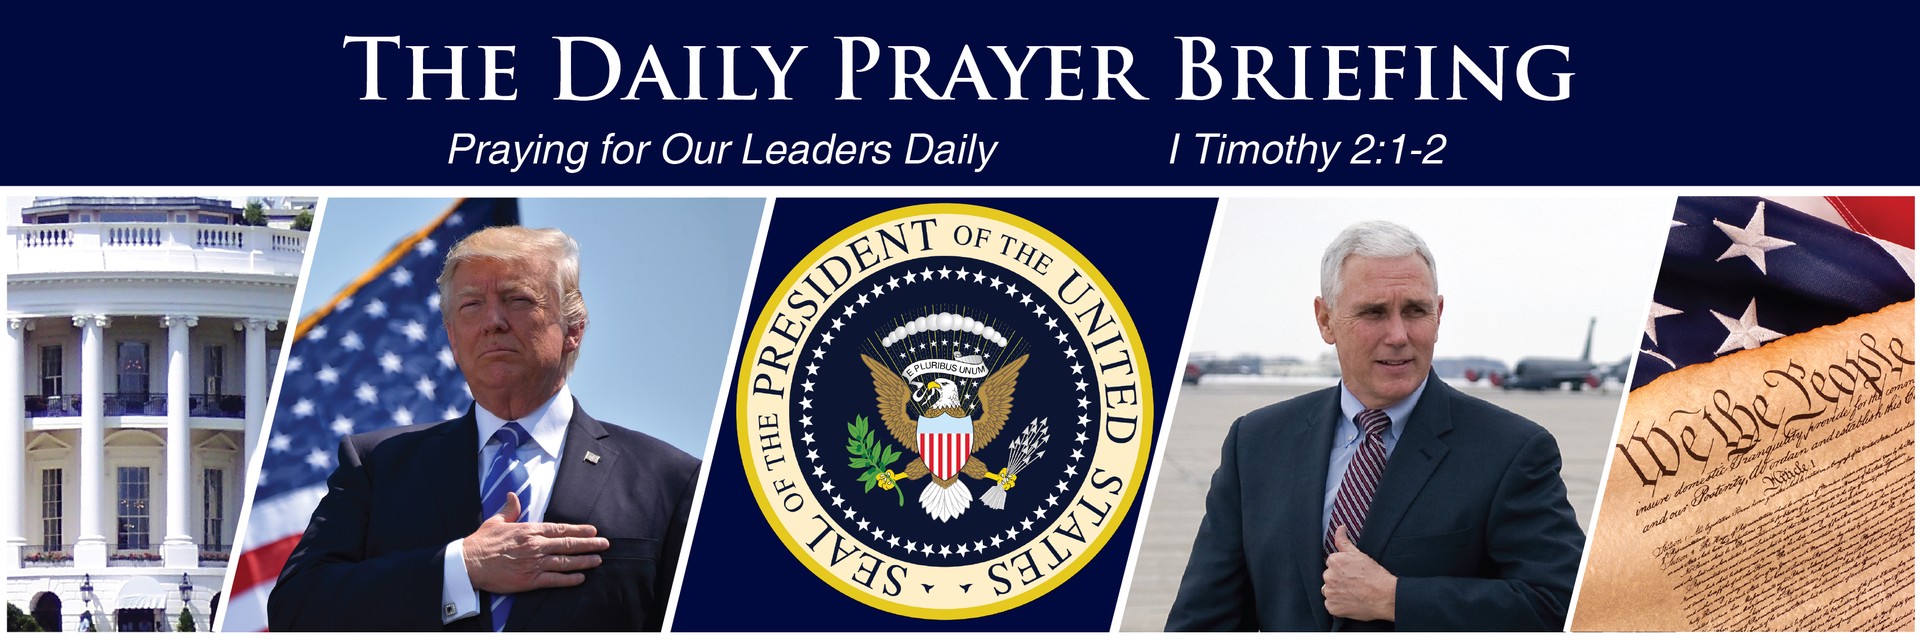 Daily Prayer Briefing | The Presidential Prayer Team